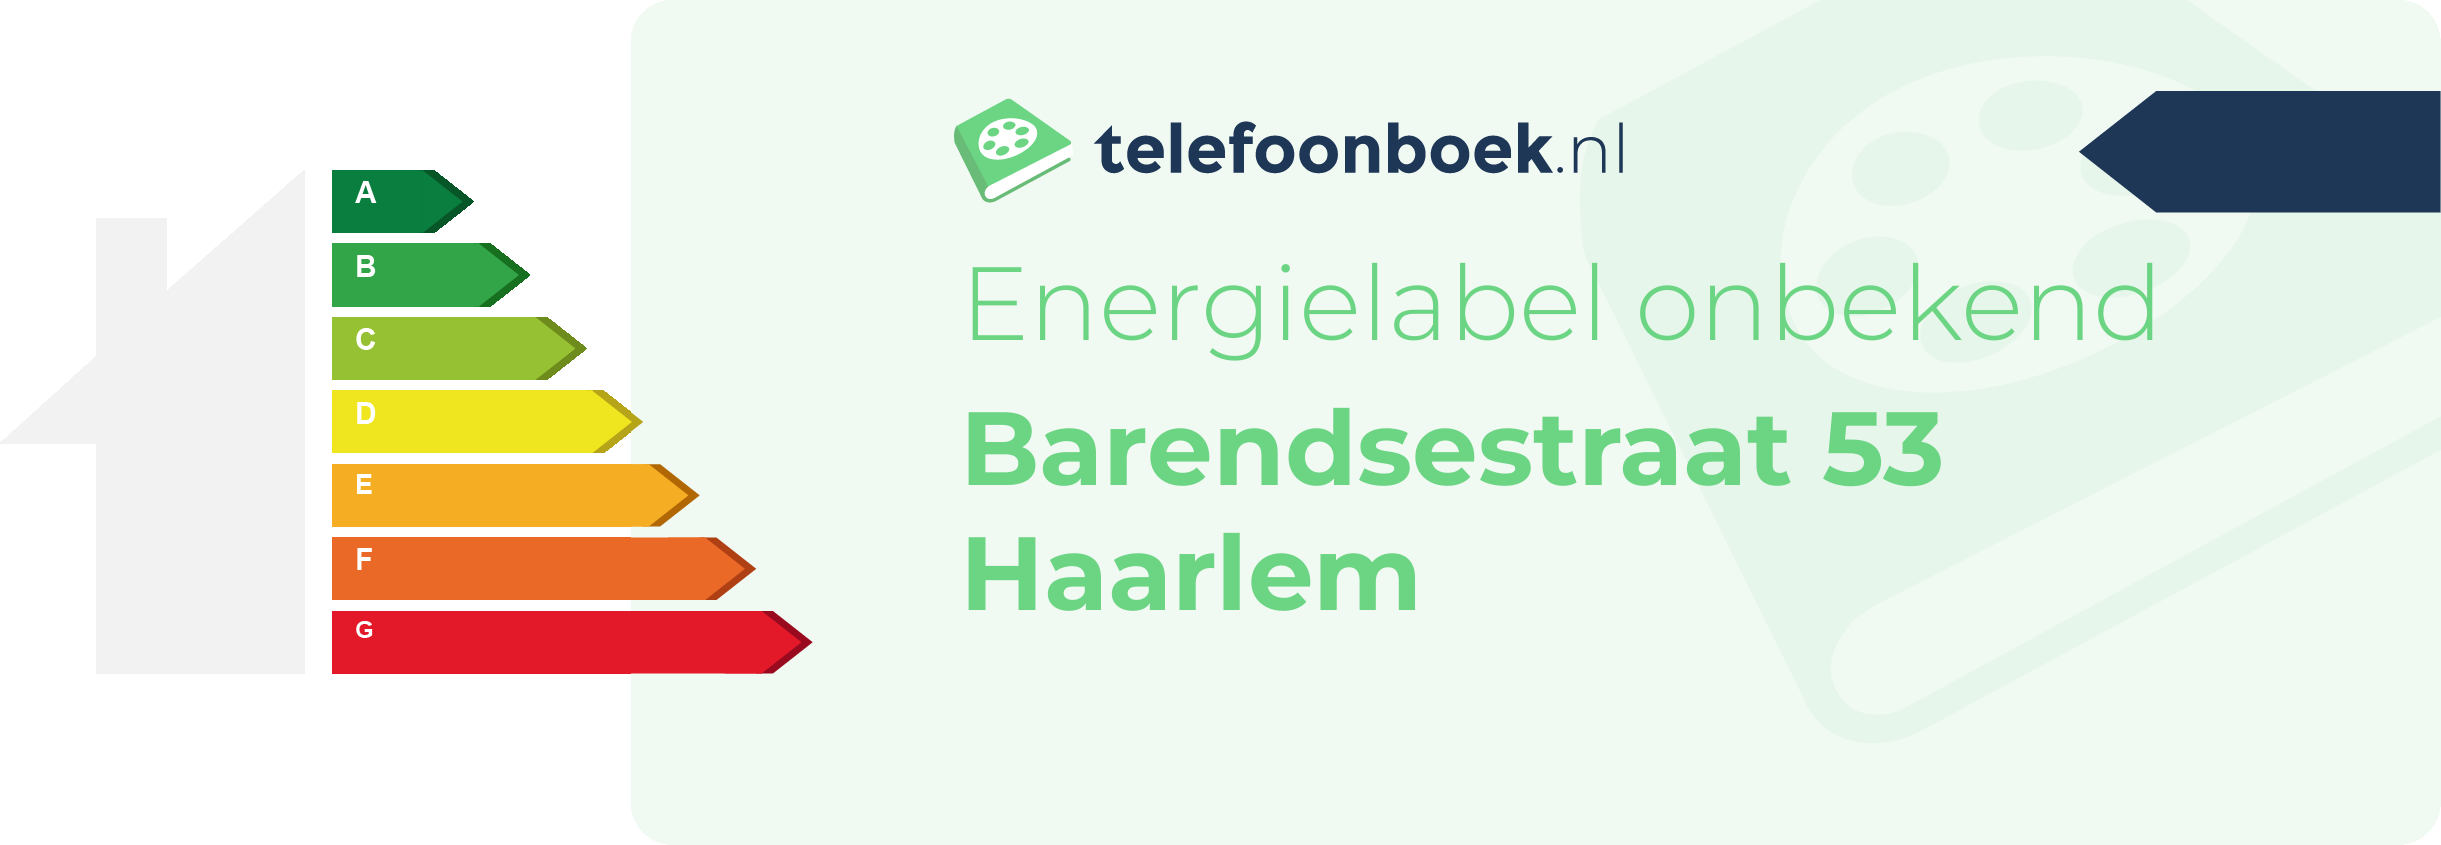 Energielabel Barendsestraat 53 Haarlem